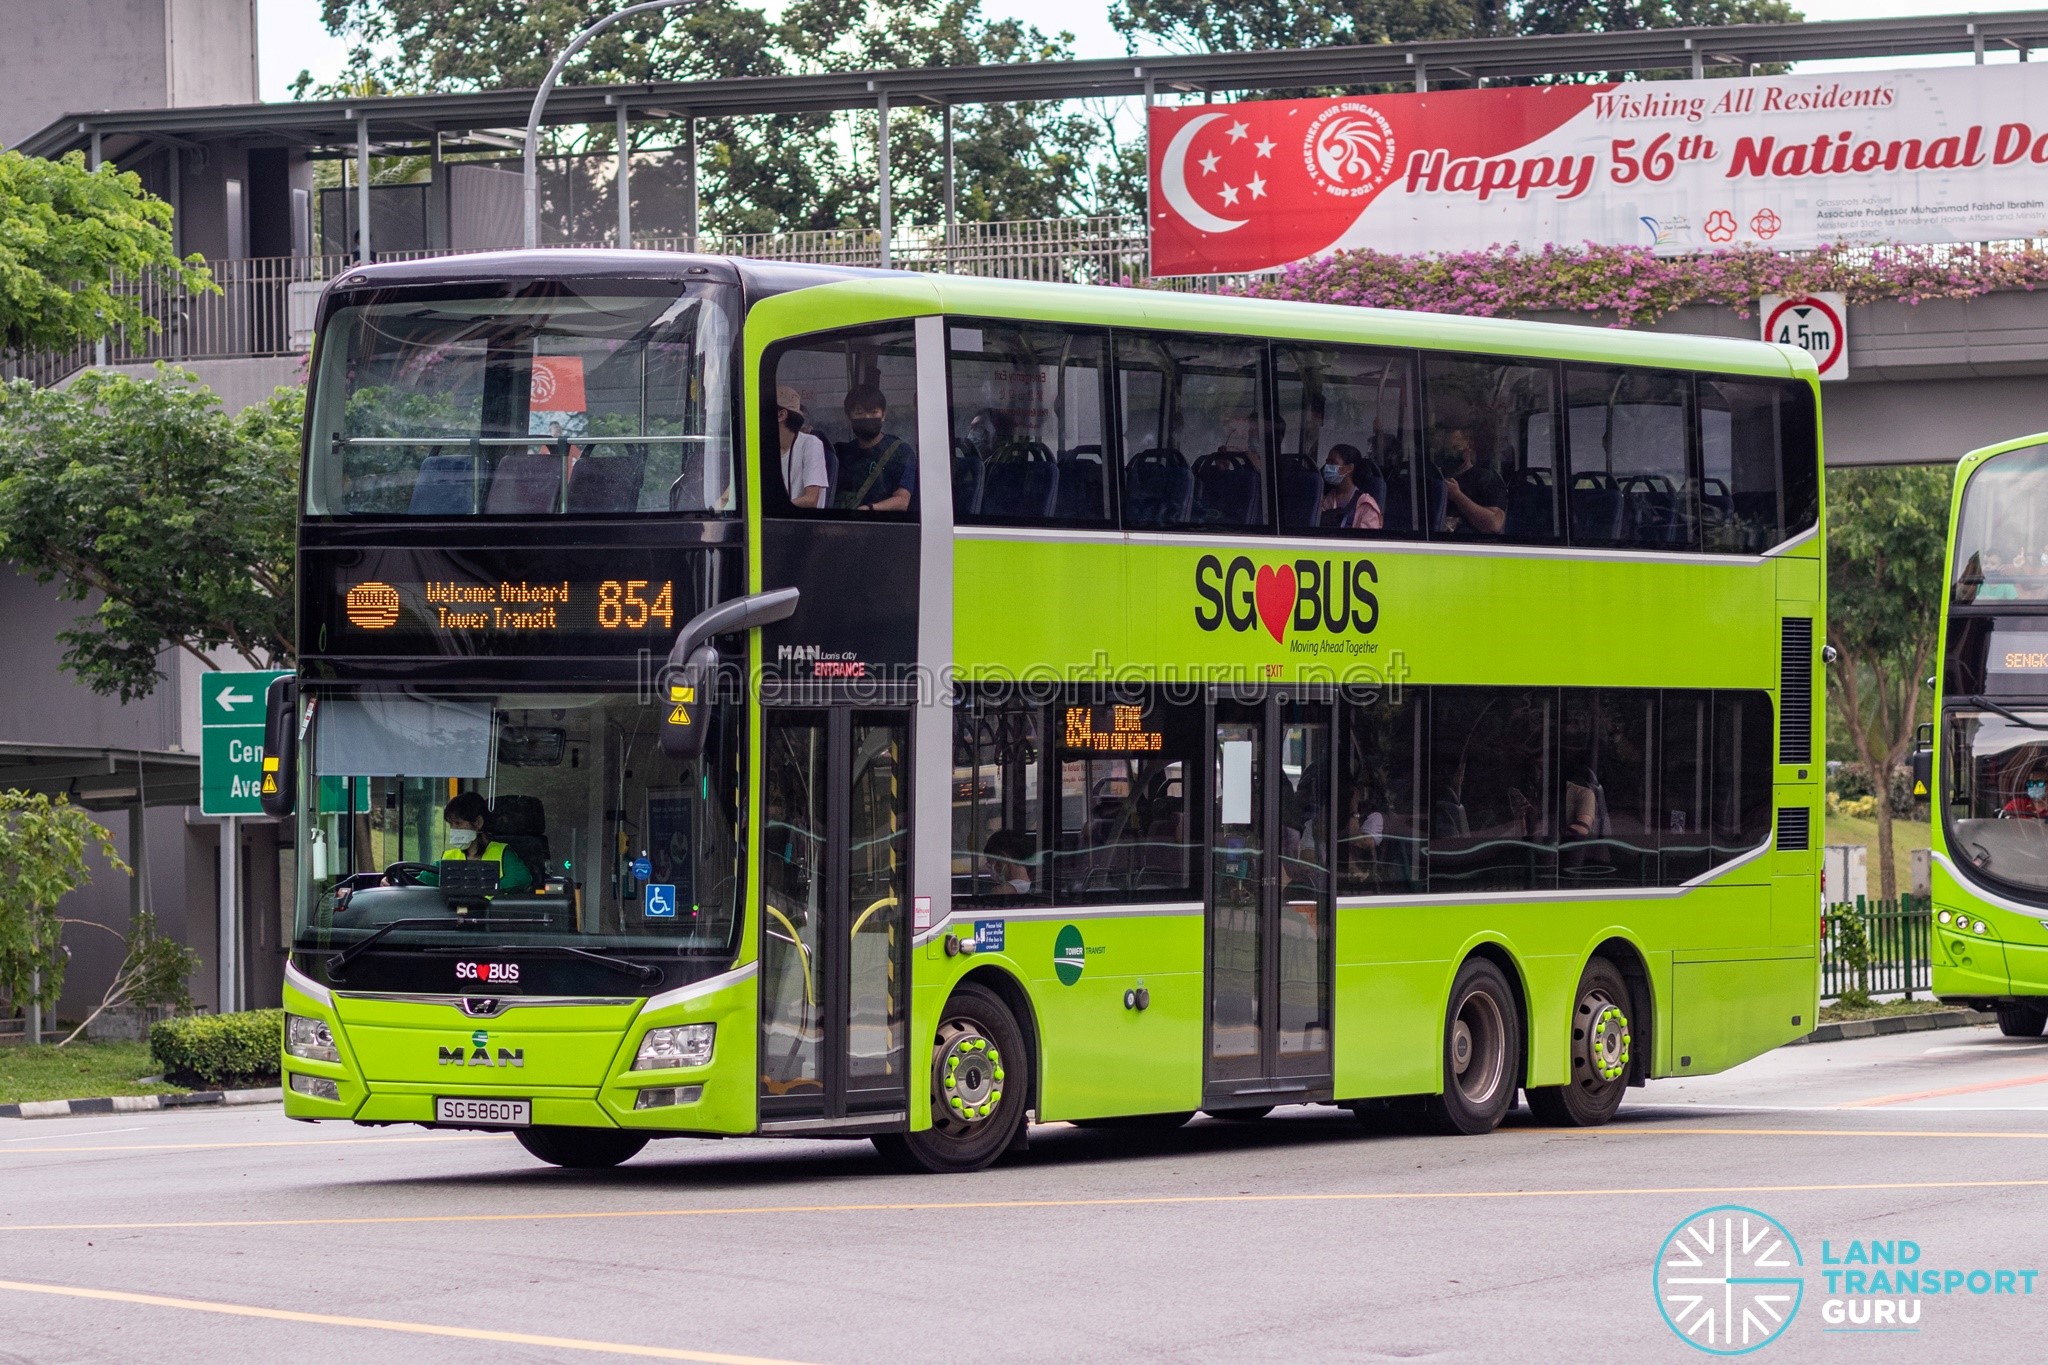 bus-854-tower-transit-man-a95-sg5860p-land-transport-guru